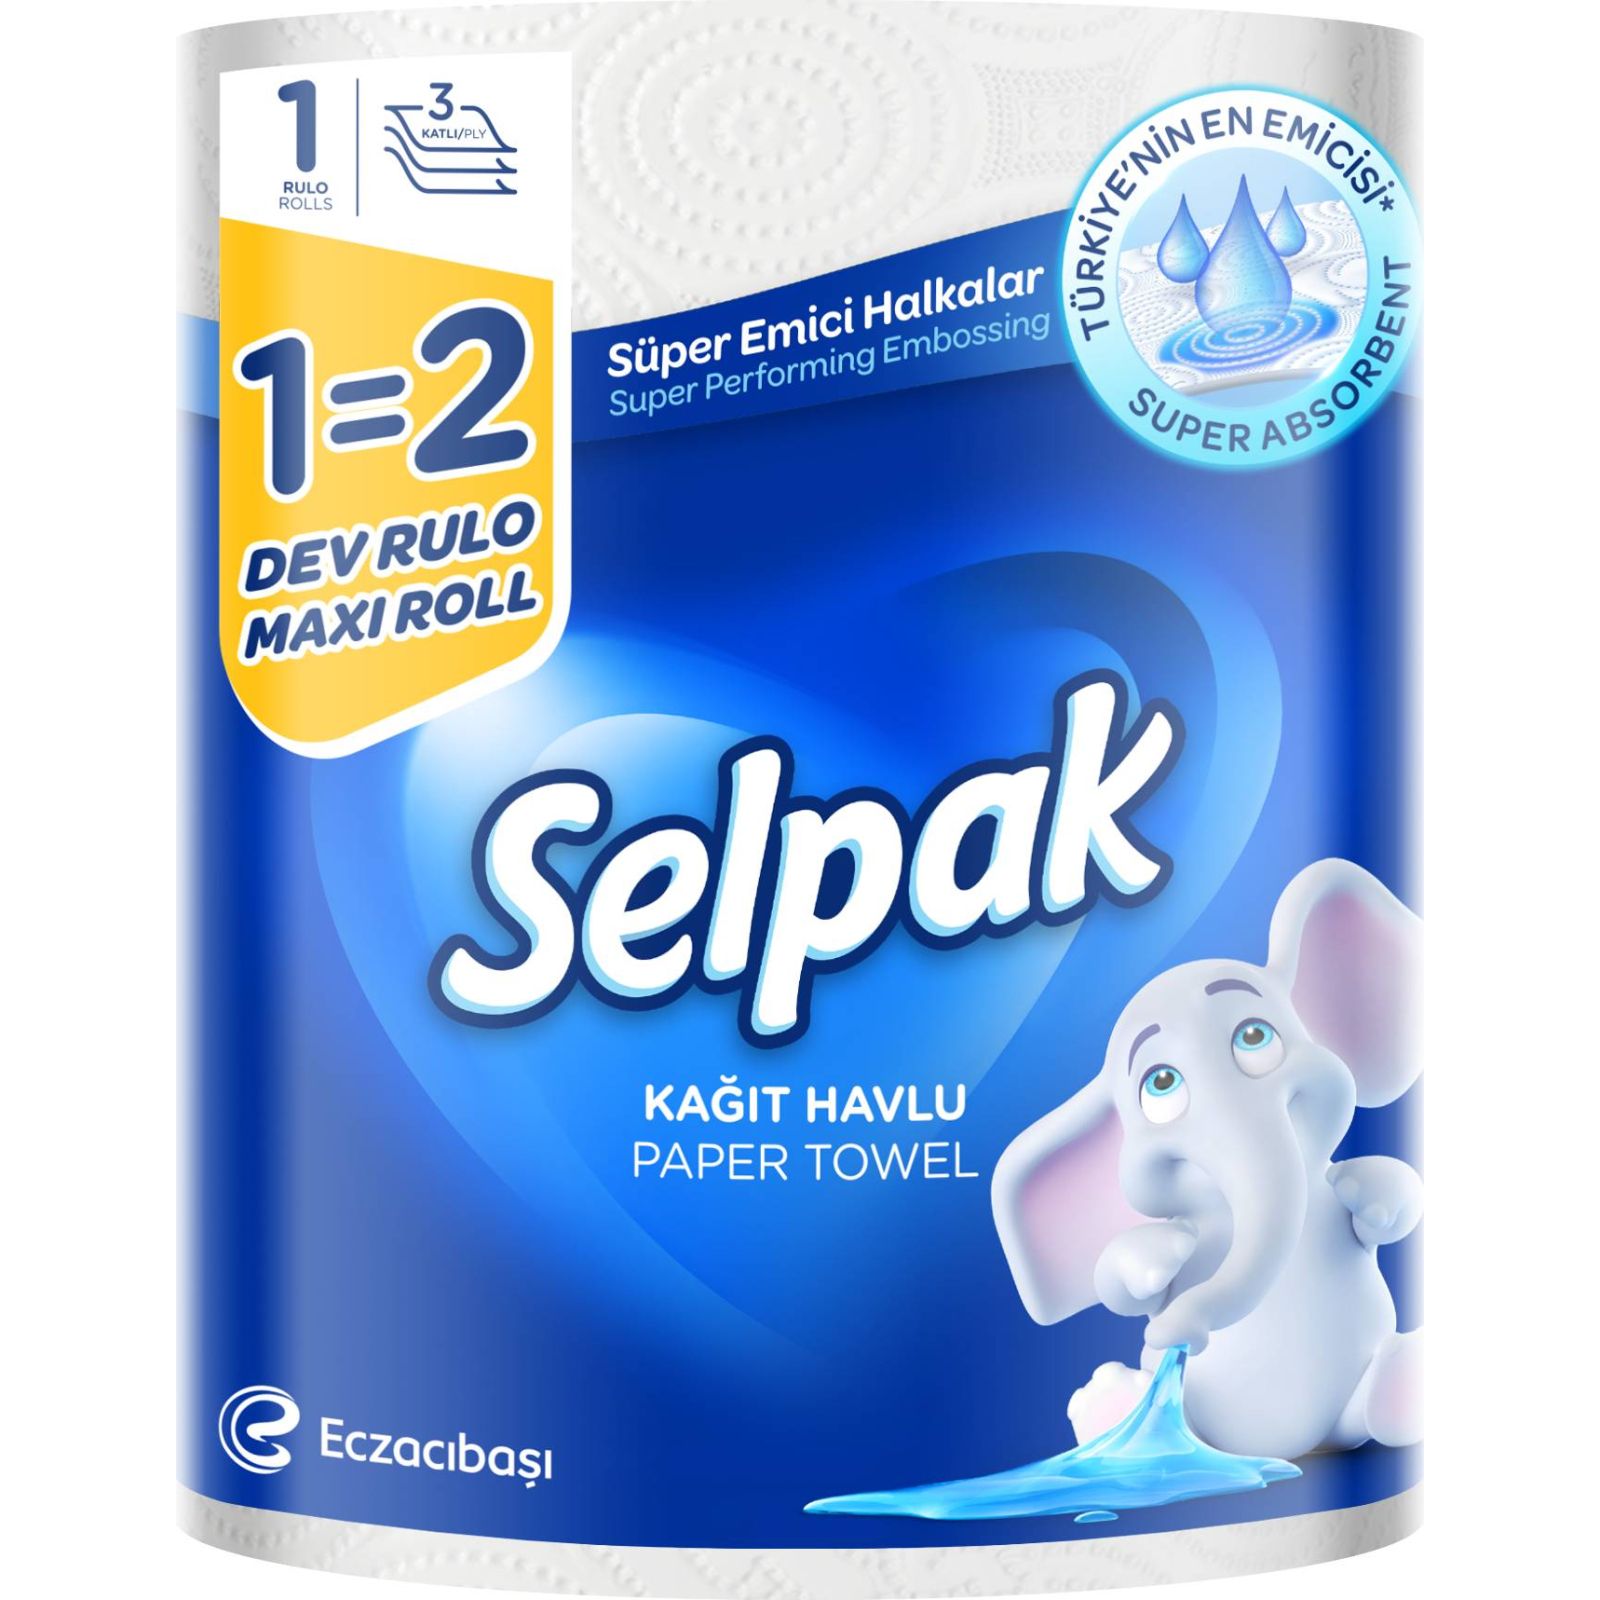 Бумажные полотенца Selpak Maxi Roll трехслойные 1 рулон - фото 1